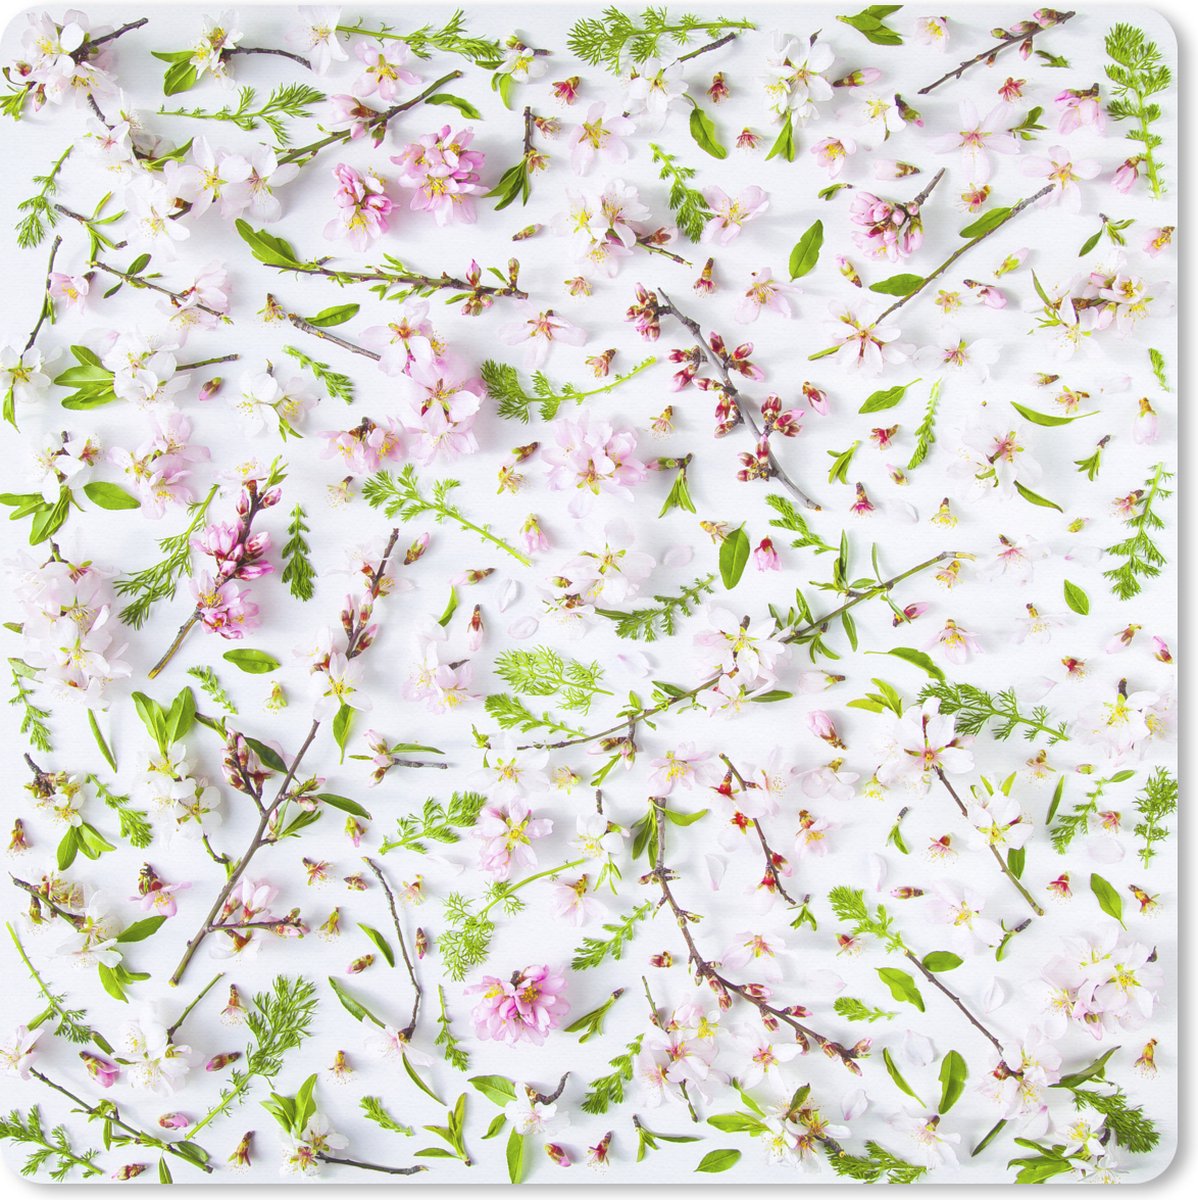 Muismat XXL - Bureau onderlegger - Bureau mat - Een wit met roze bloemdessin - 50x50 cm - XXL muismat